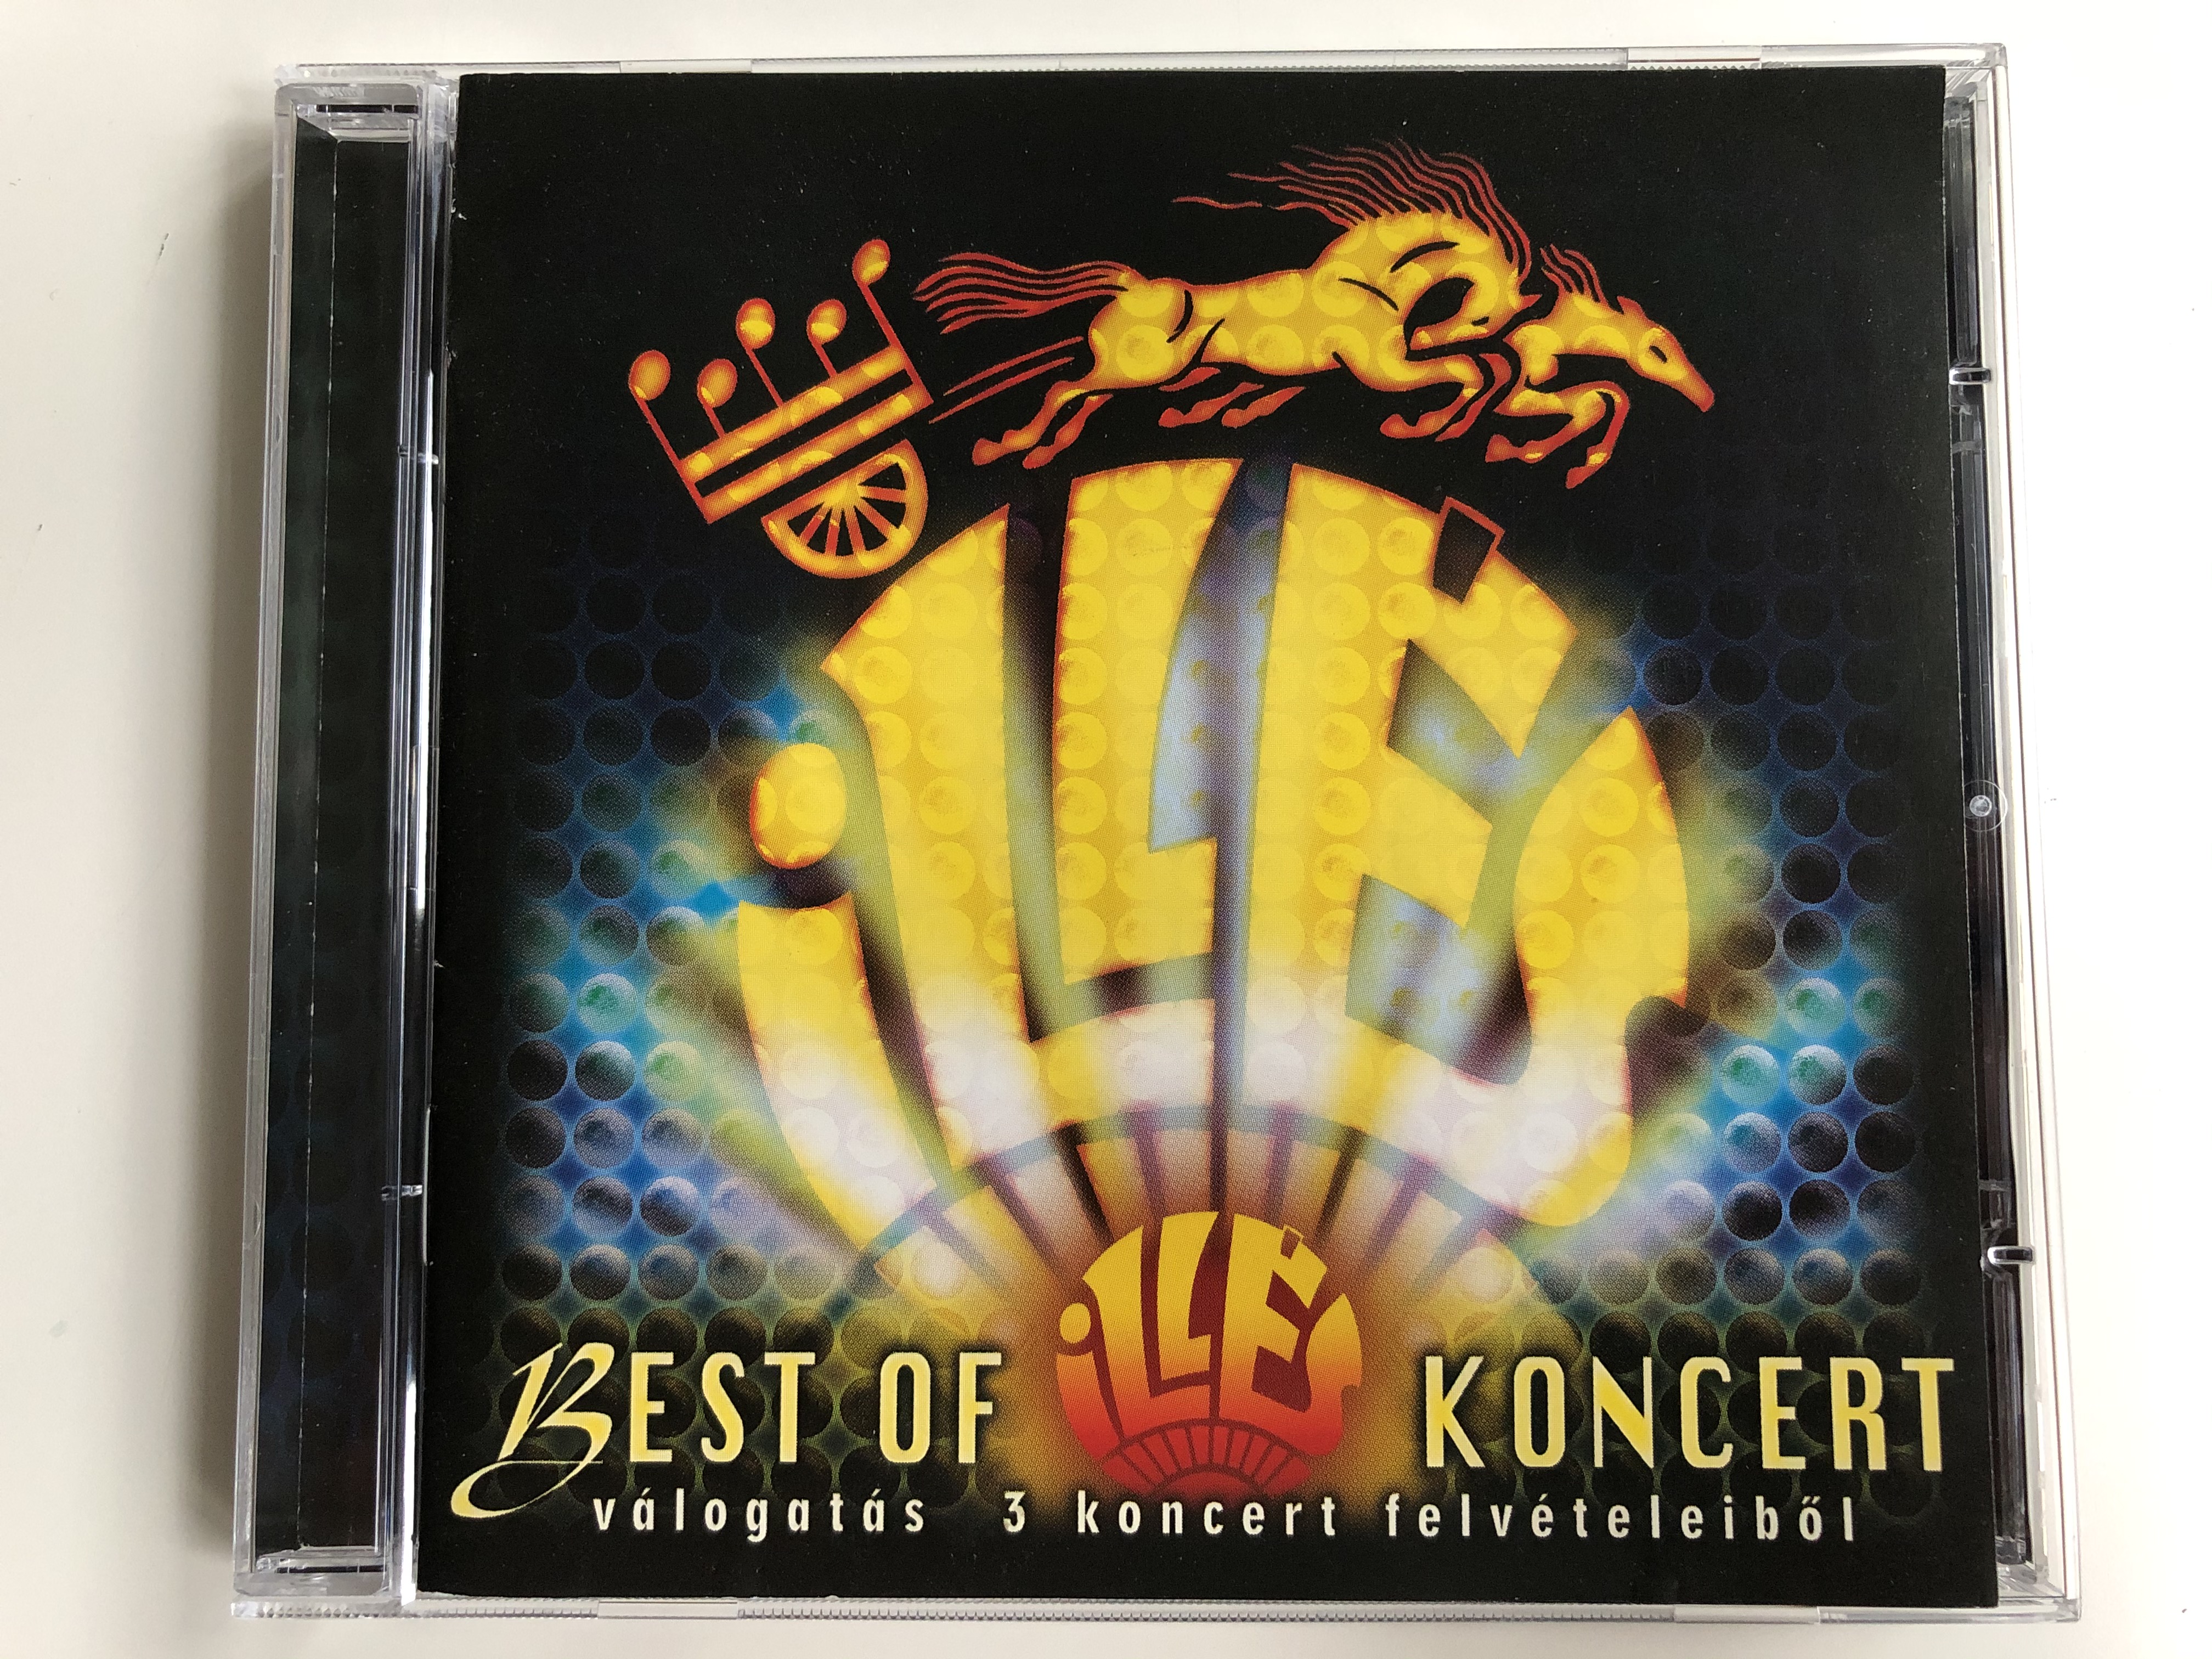 ill-s-best-of-ill-s-koncert-v-logat-s-3-koncert-felv-teleib-l-hungaroton-audio-cd-2005-hcd-71196-1-.jpg